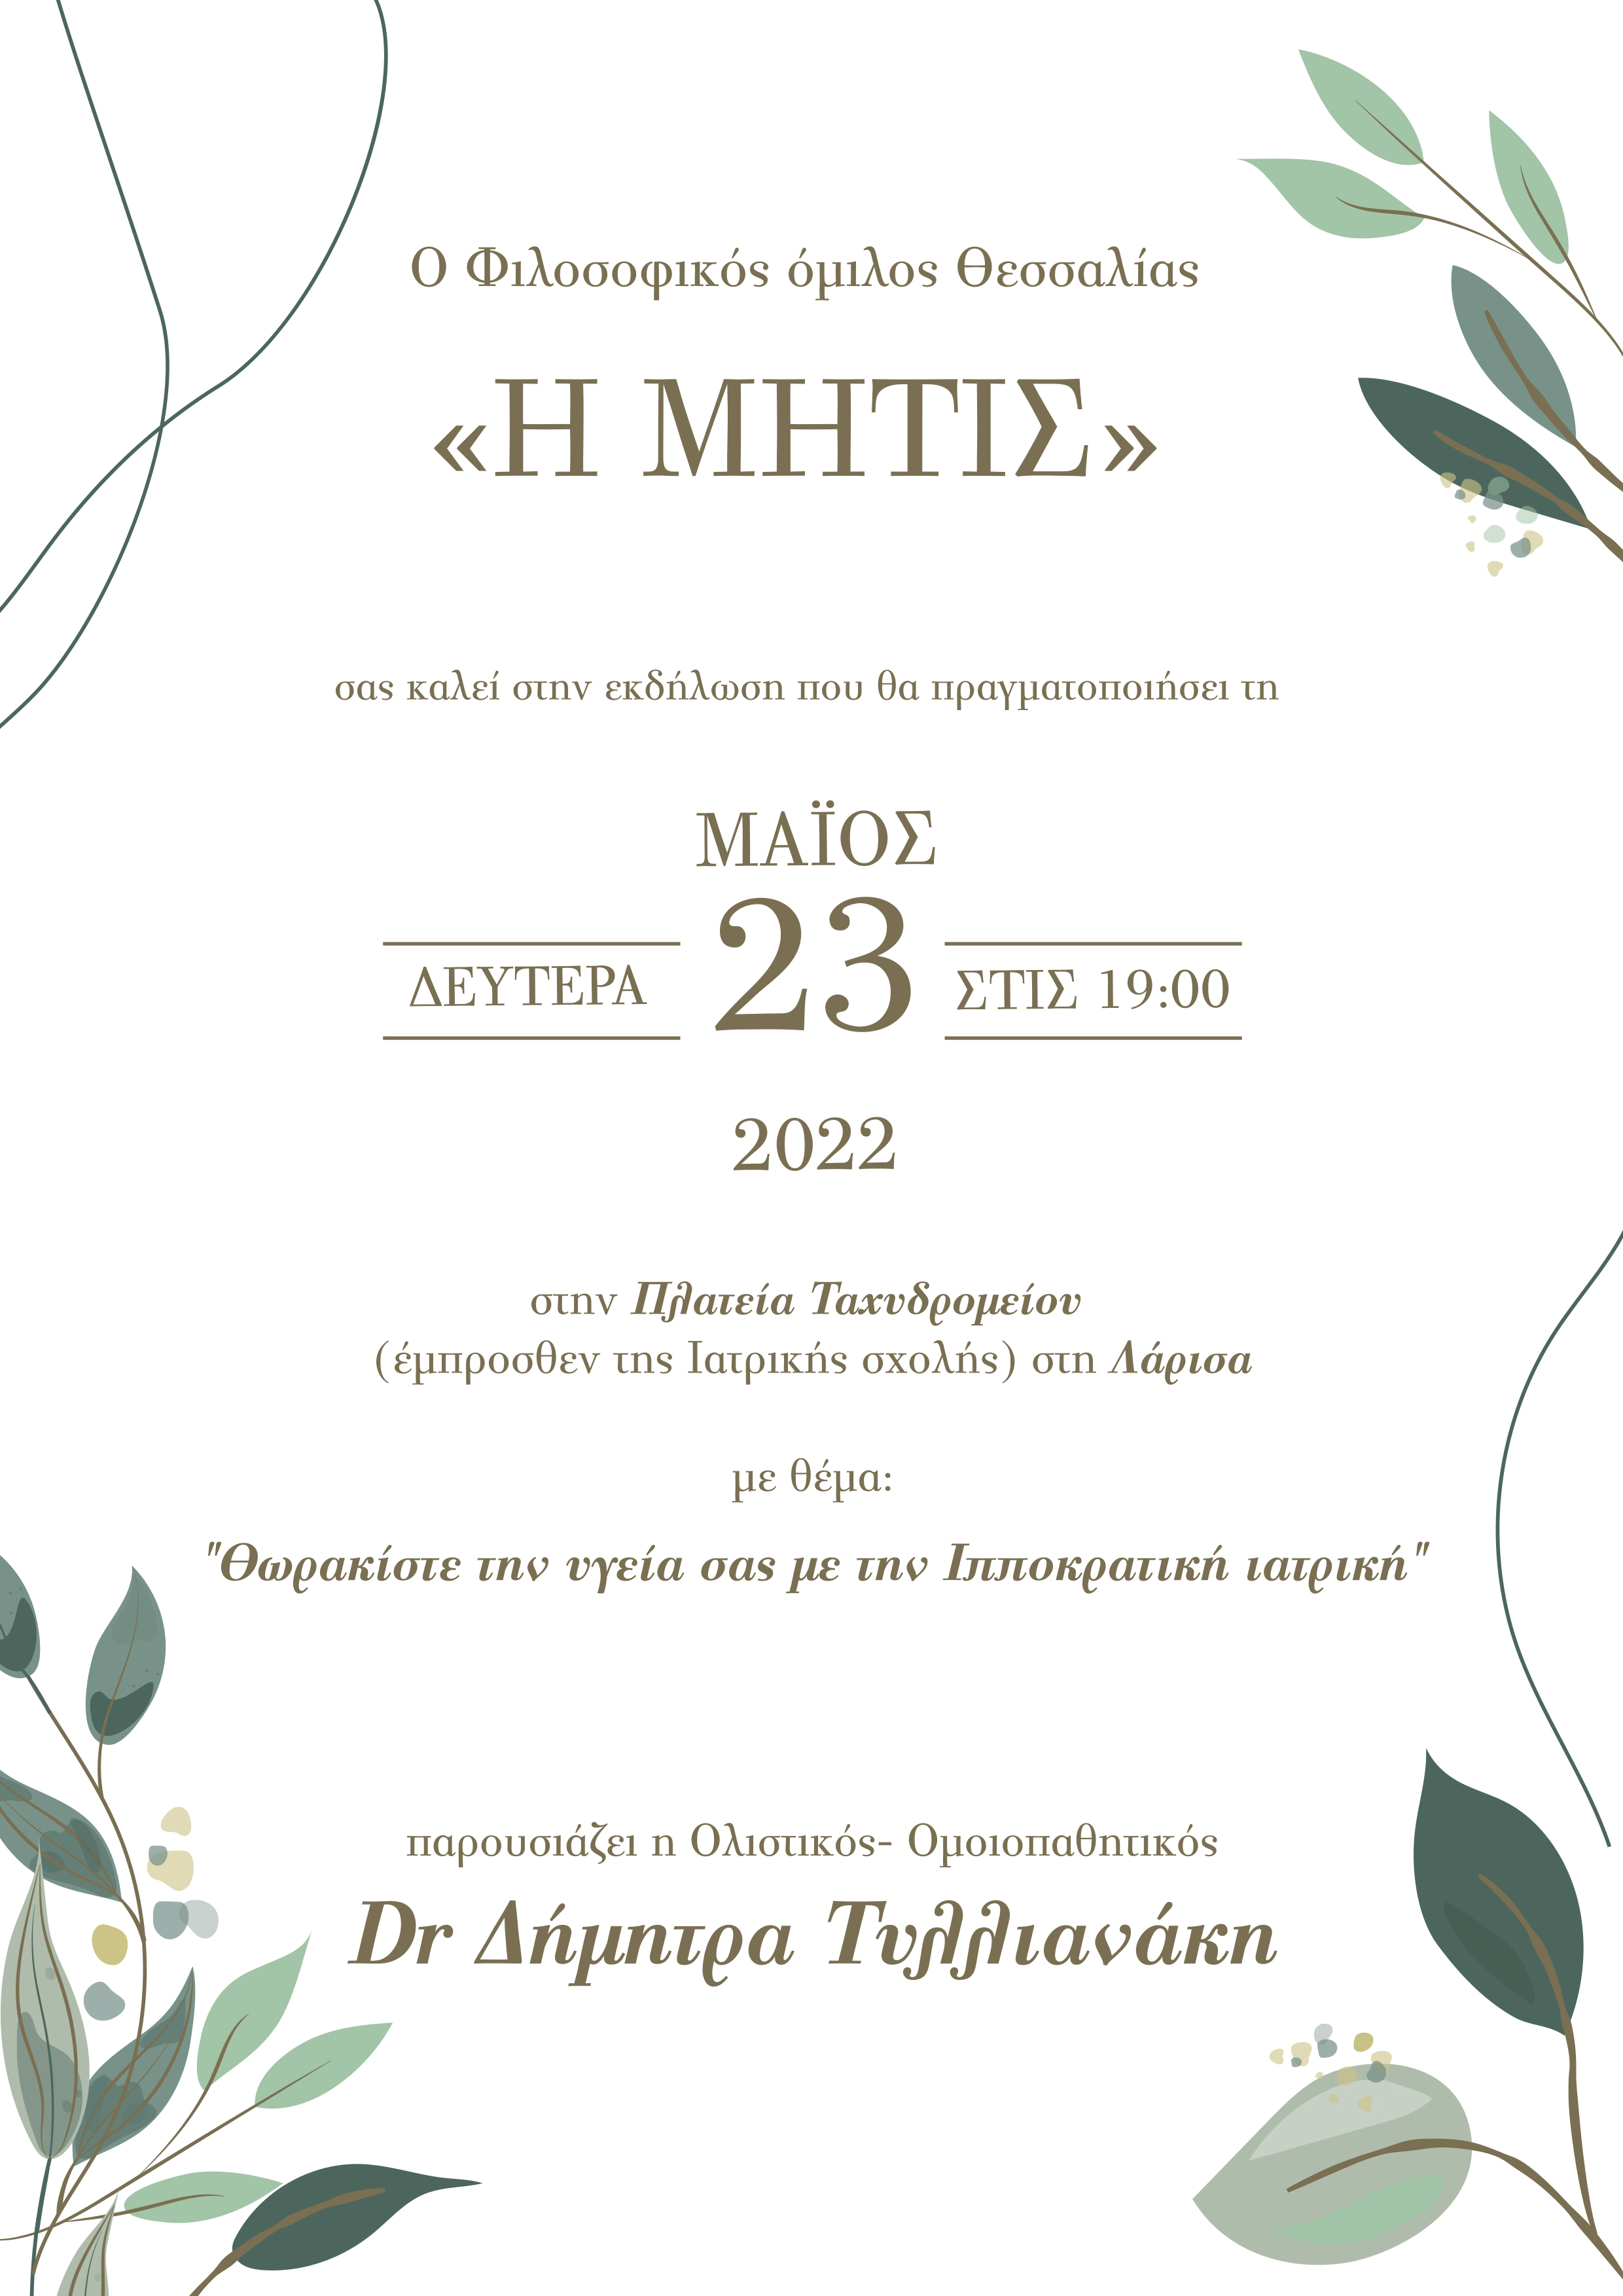 Εκδήλωση για την Ιπποκράτεια Ιατρική από τον Φιλοσοφικό Ομιλο Θεσσαλίας "Η Μήτις"